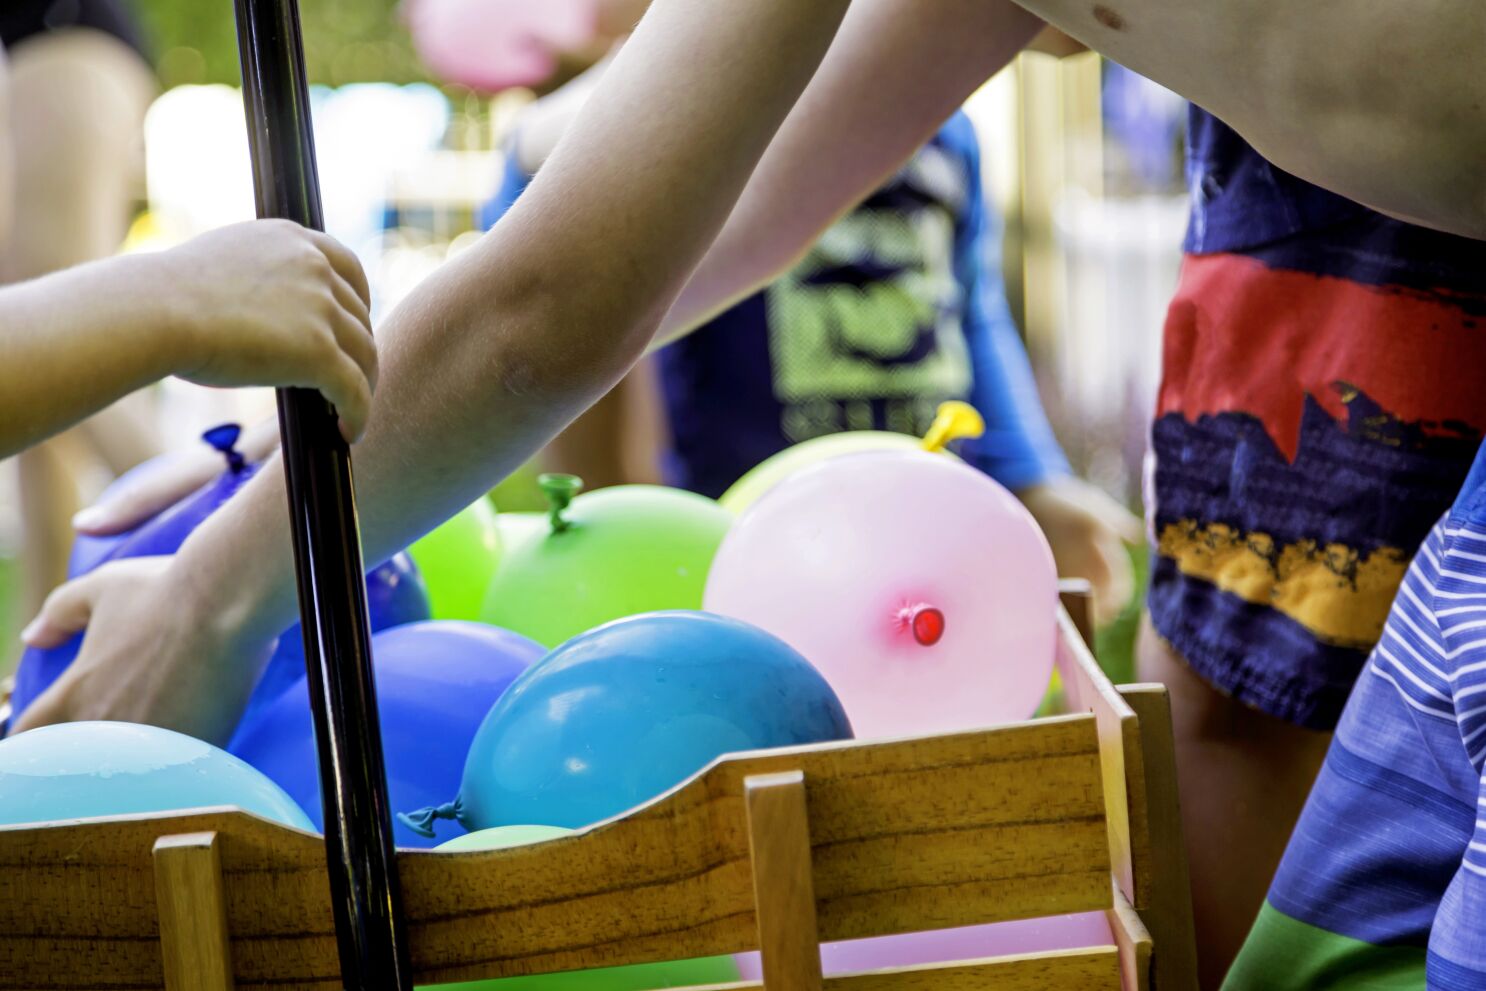 Битва шаров. Битва водяными шарами. Конкурсы с водяными бомбочками. Игра с водяными шарами для детей. Игры с водяными бомбочками для детей на улице летом.